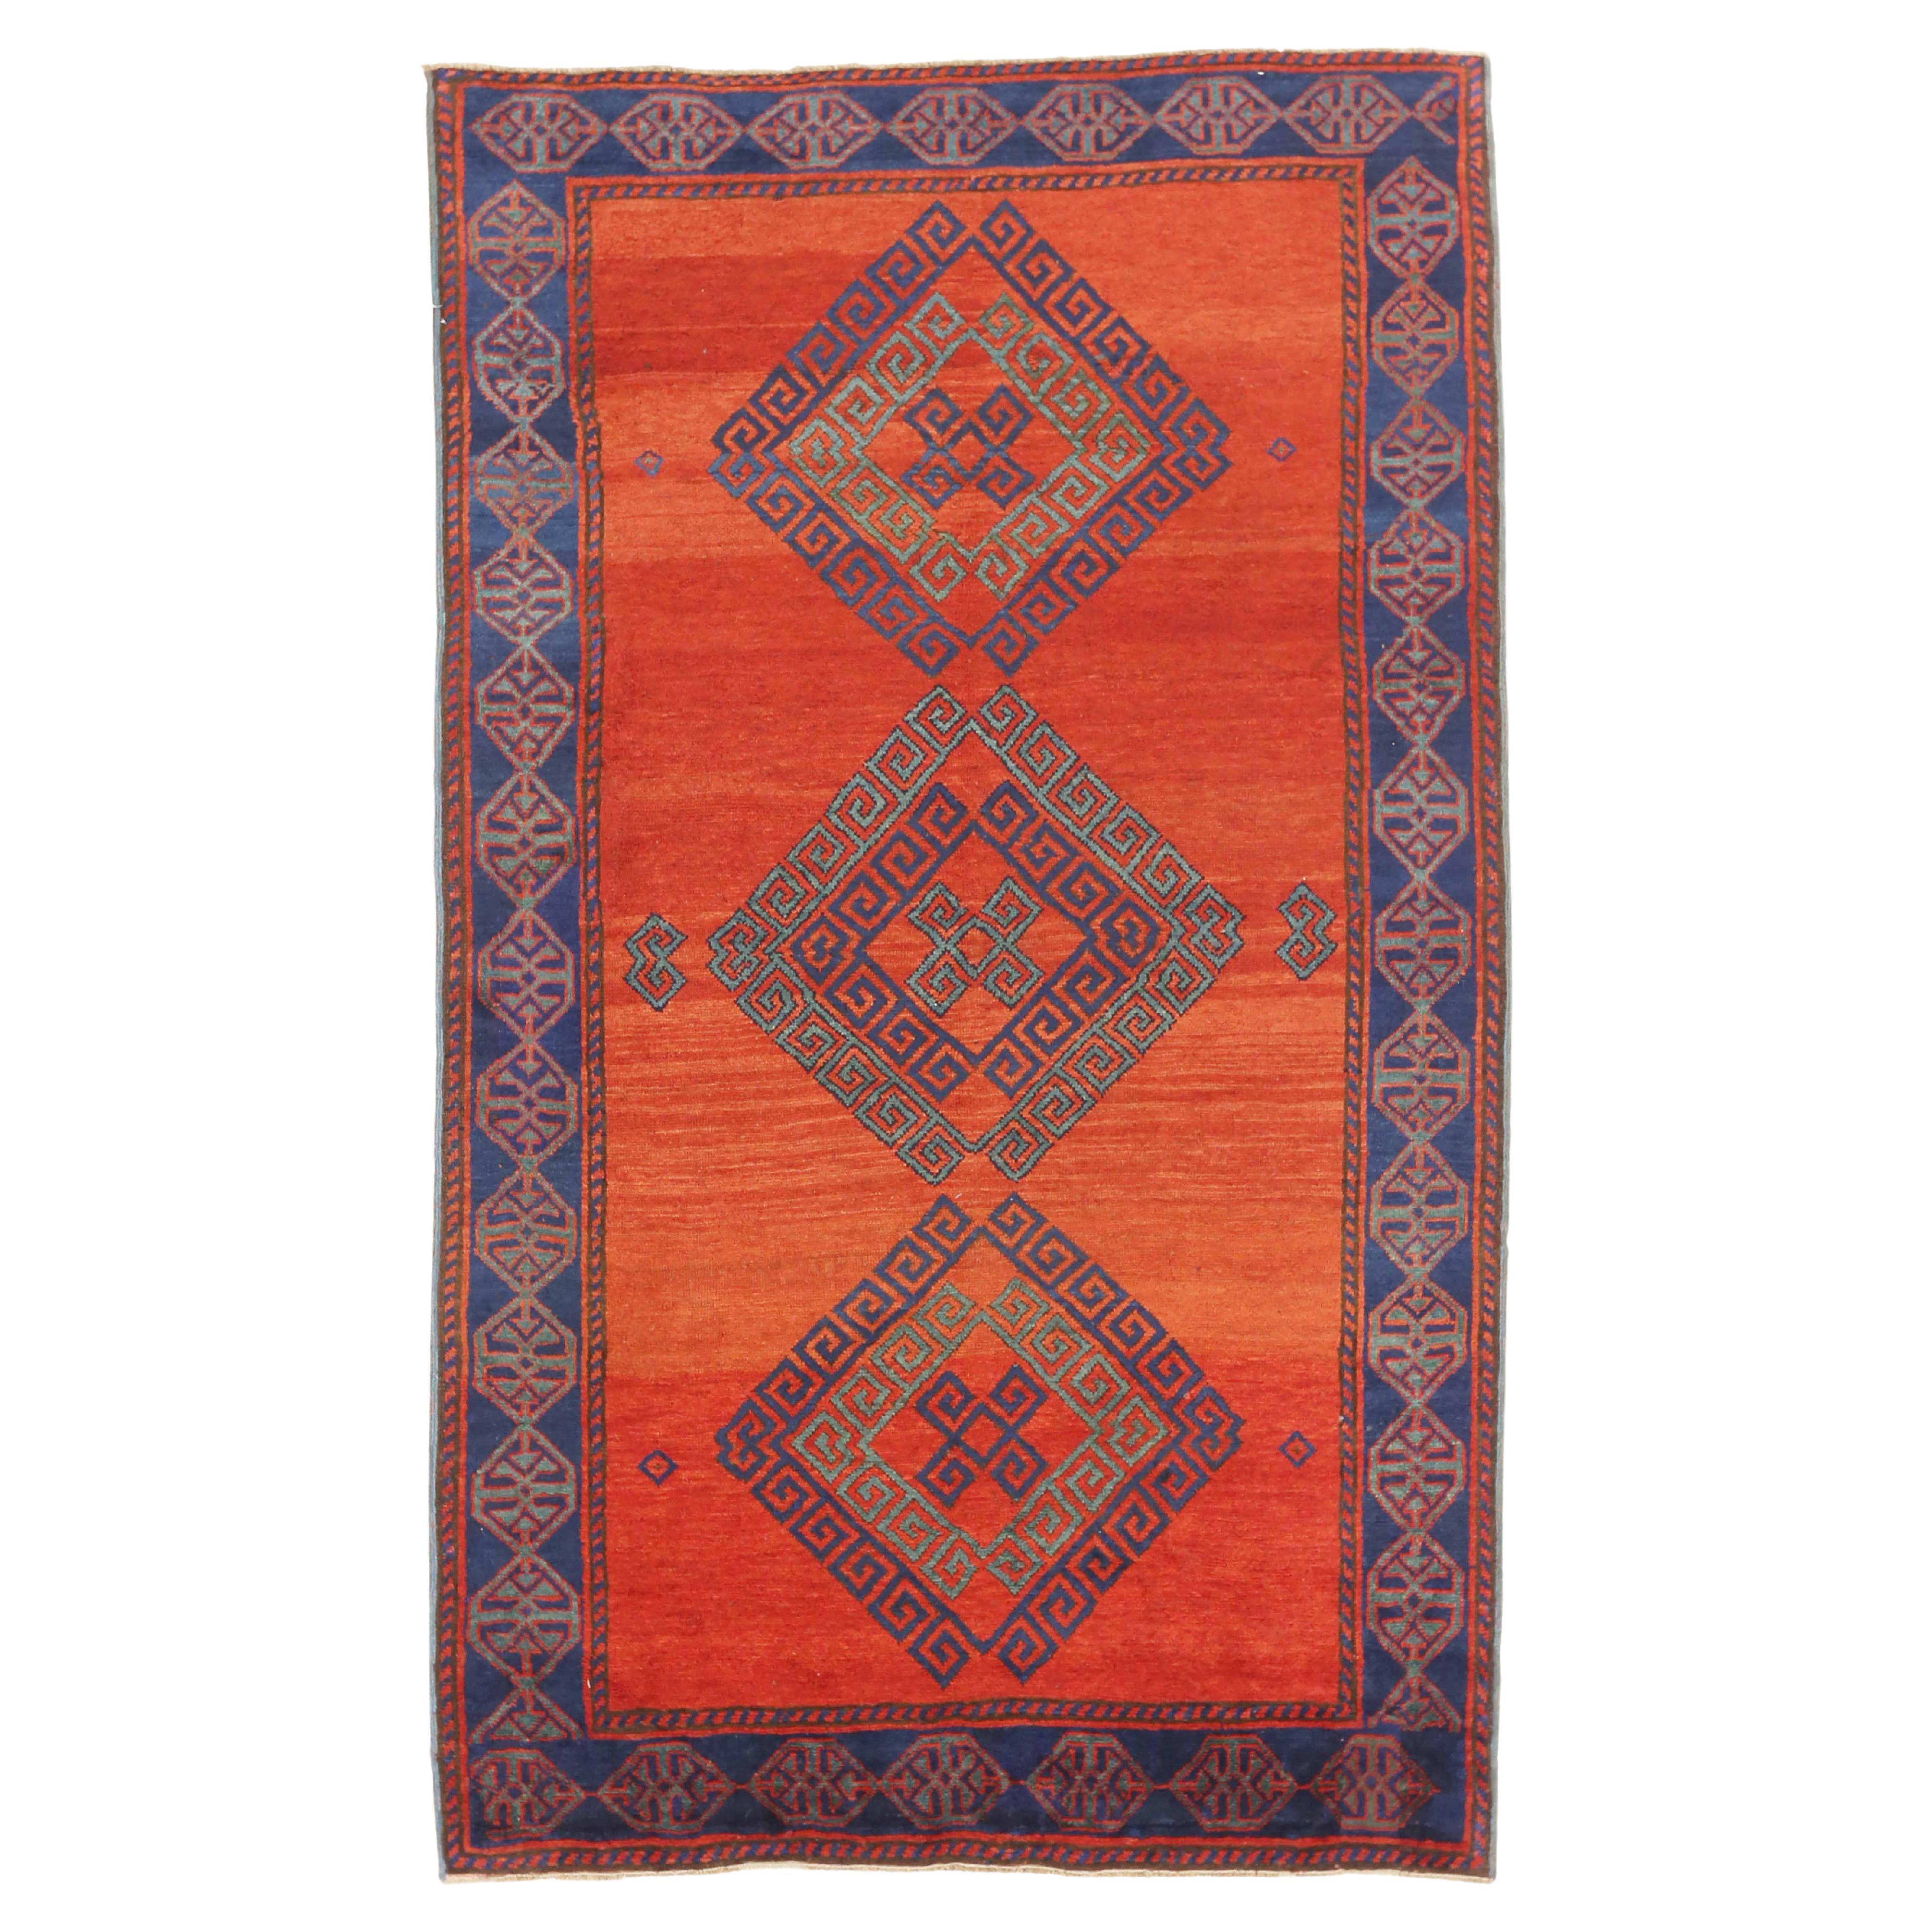 Antiker russischer Teppich im Kazak-Design, antik